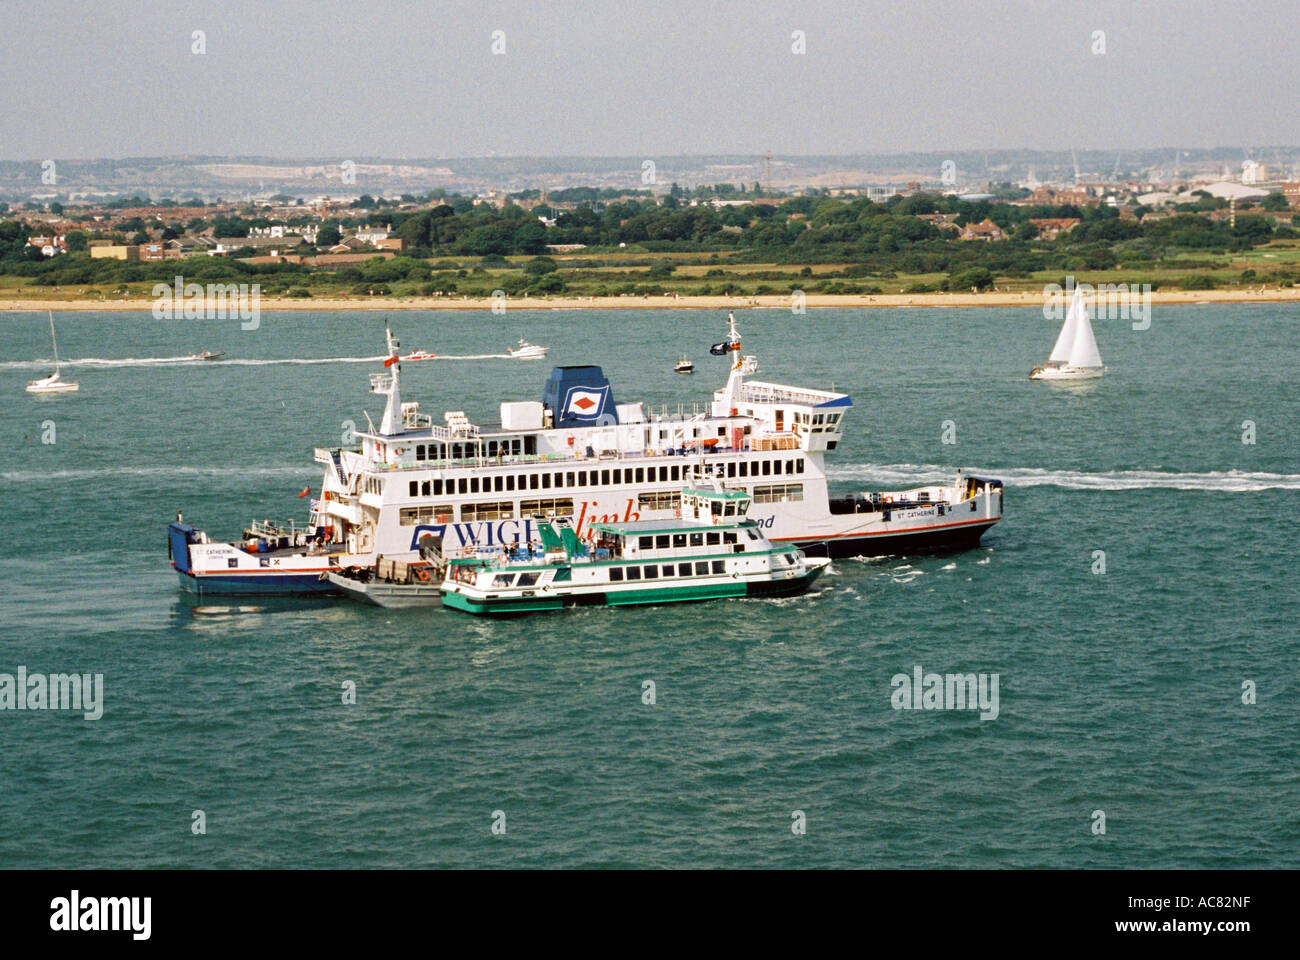 P&O Ferries et Gosport ferry, ancrée dans le Solent. Le port de Portsmouth, Hampshire, Angleterre. Banque D'Images